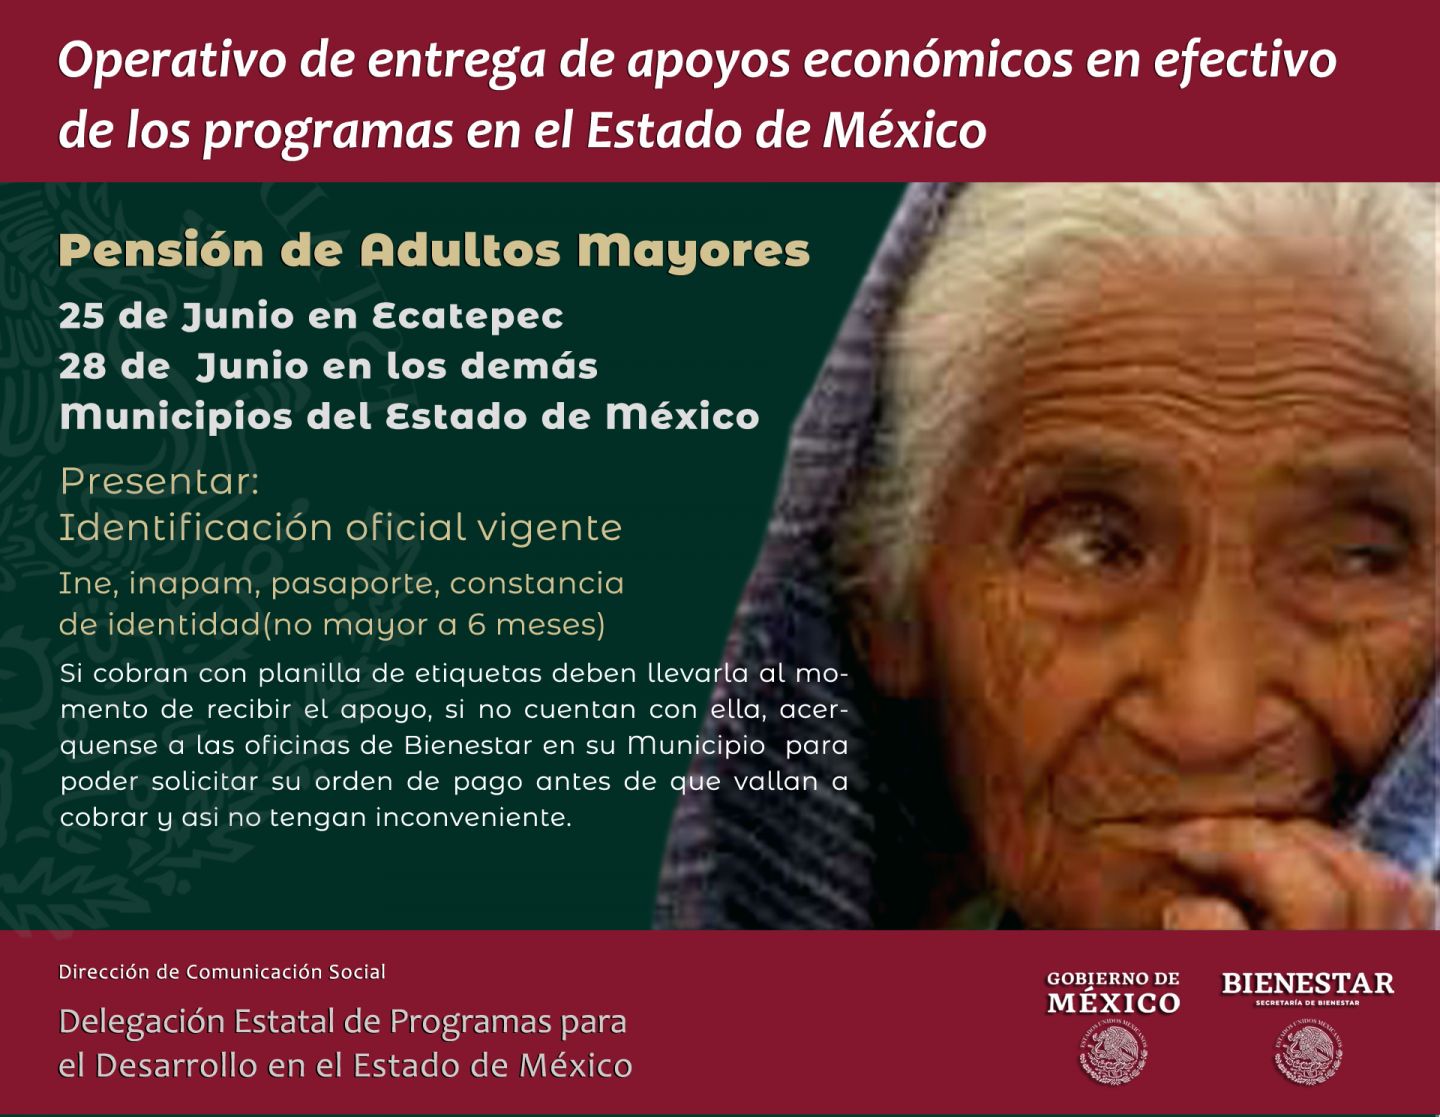 El Operativo de entrega de apoyos económicos en efectivo de los programas en el Estado de México comienza el 25 de junio 2021 